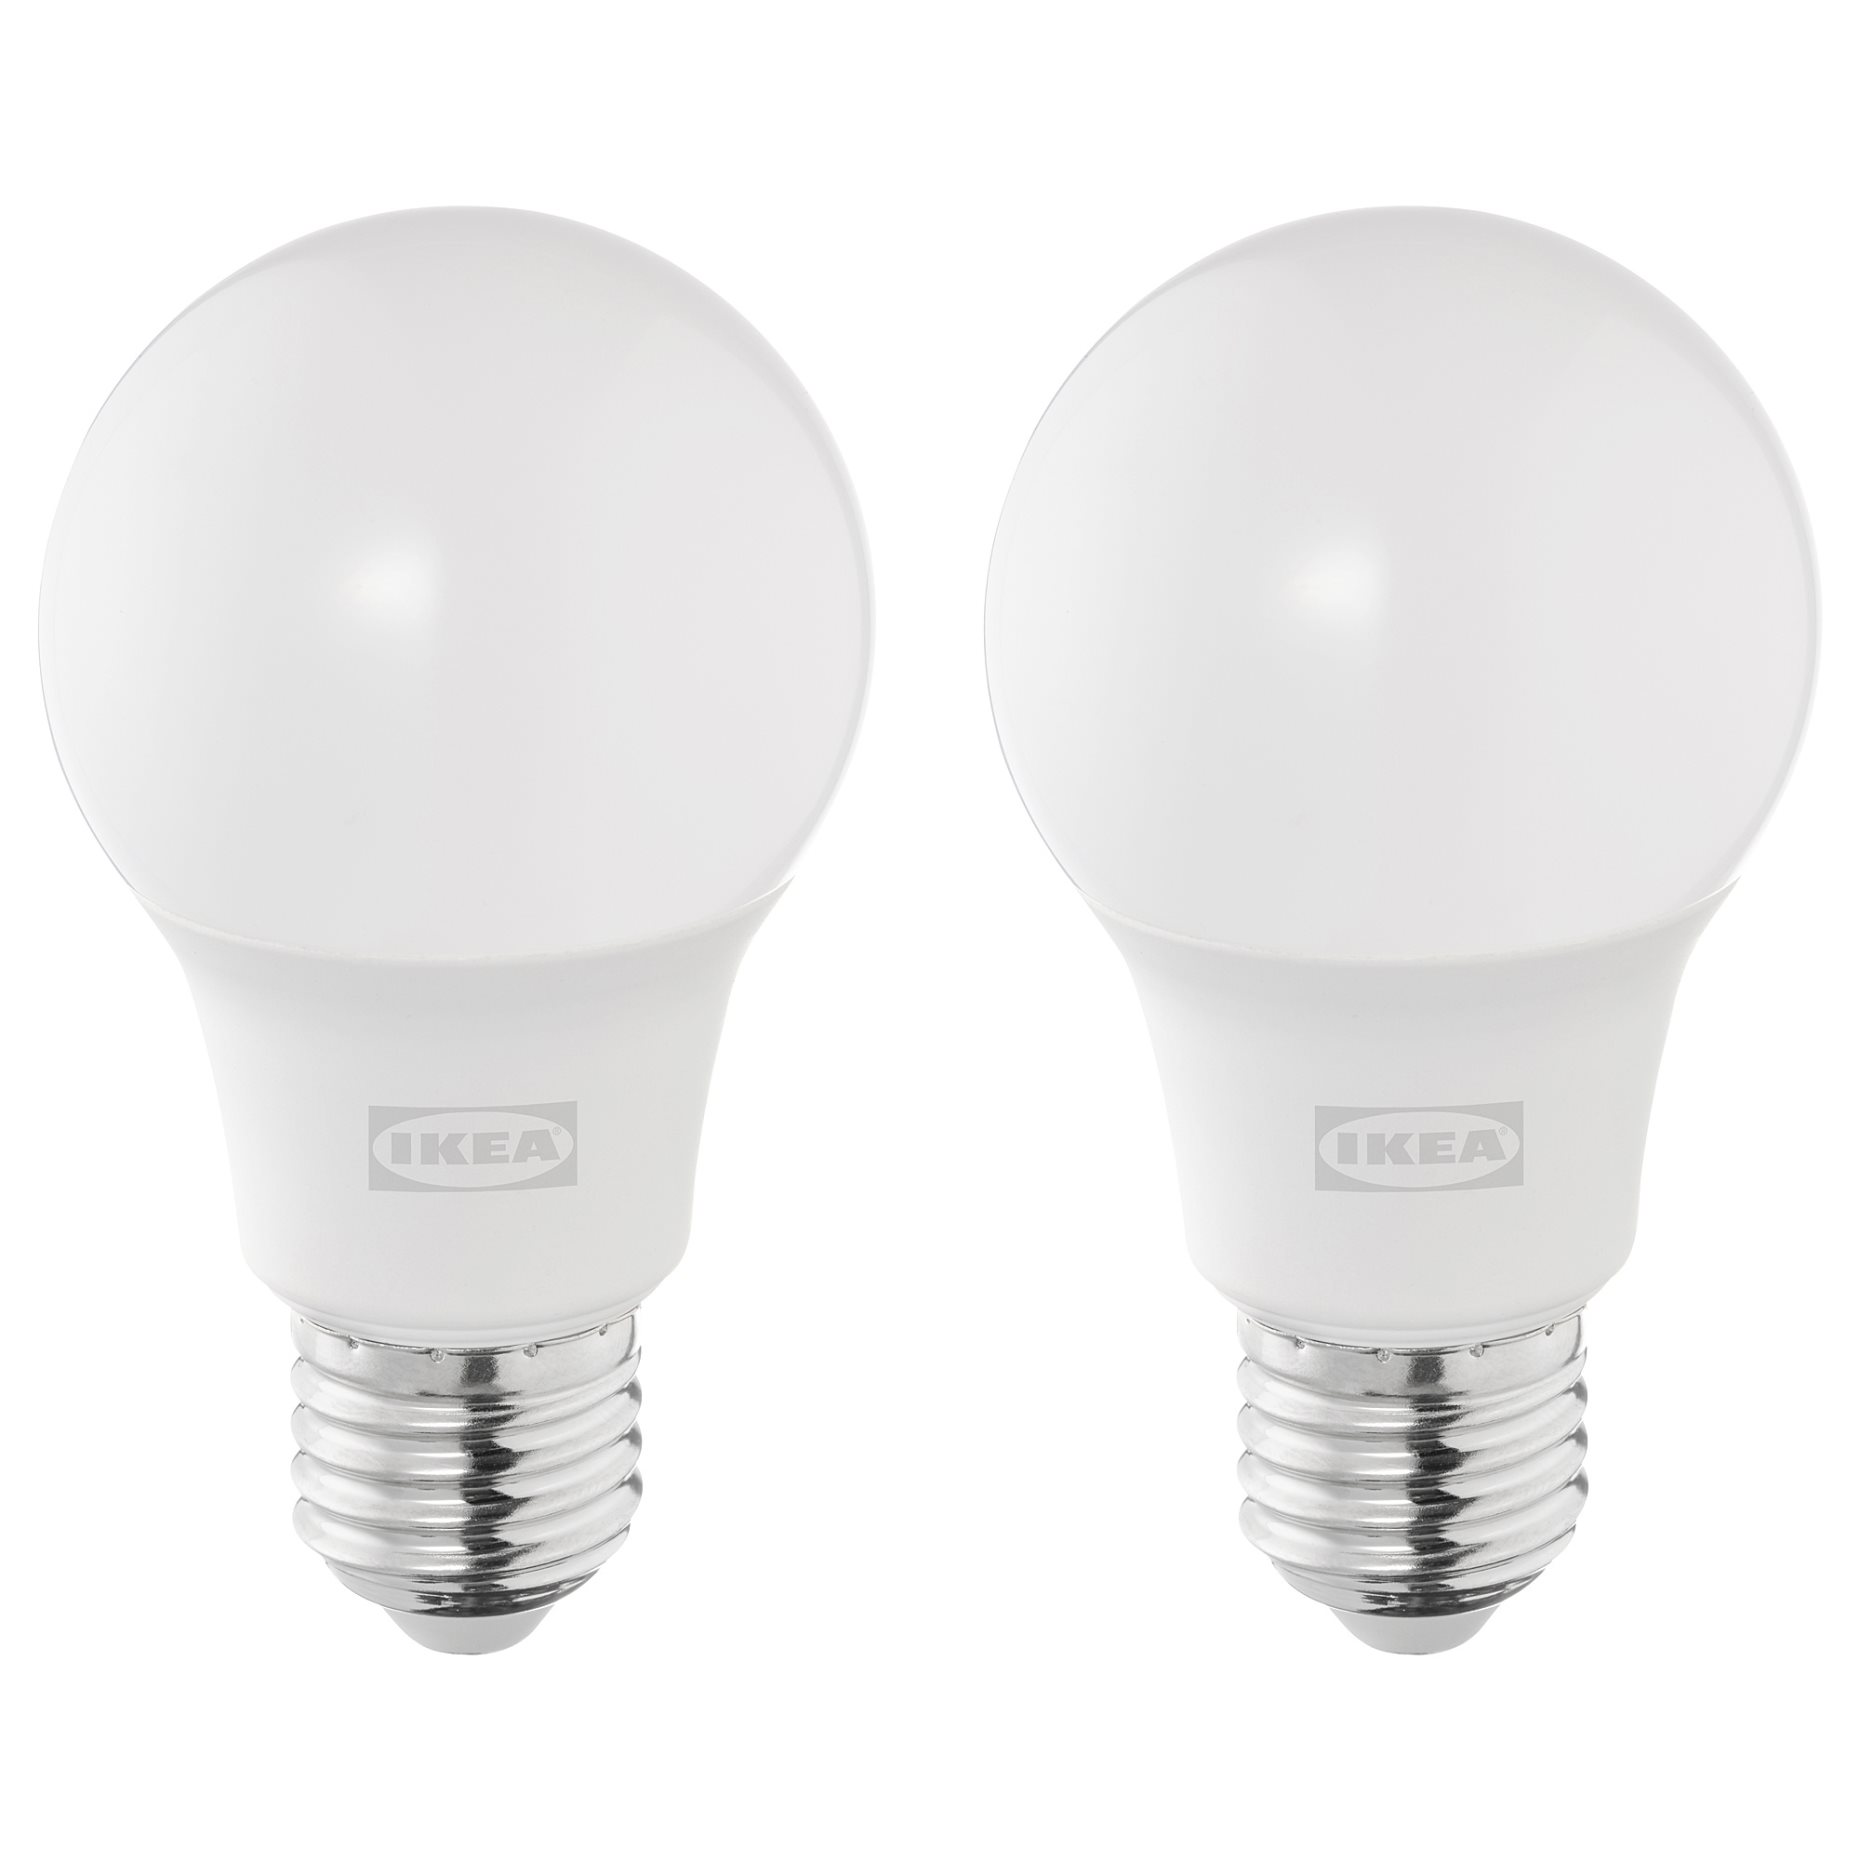 SOLHETTA, LED bulb E27 806 lumen/globe, 2 pack, 305.099.78